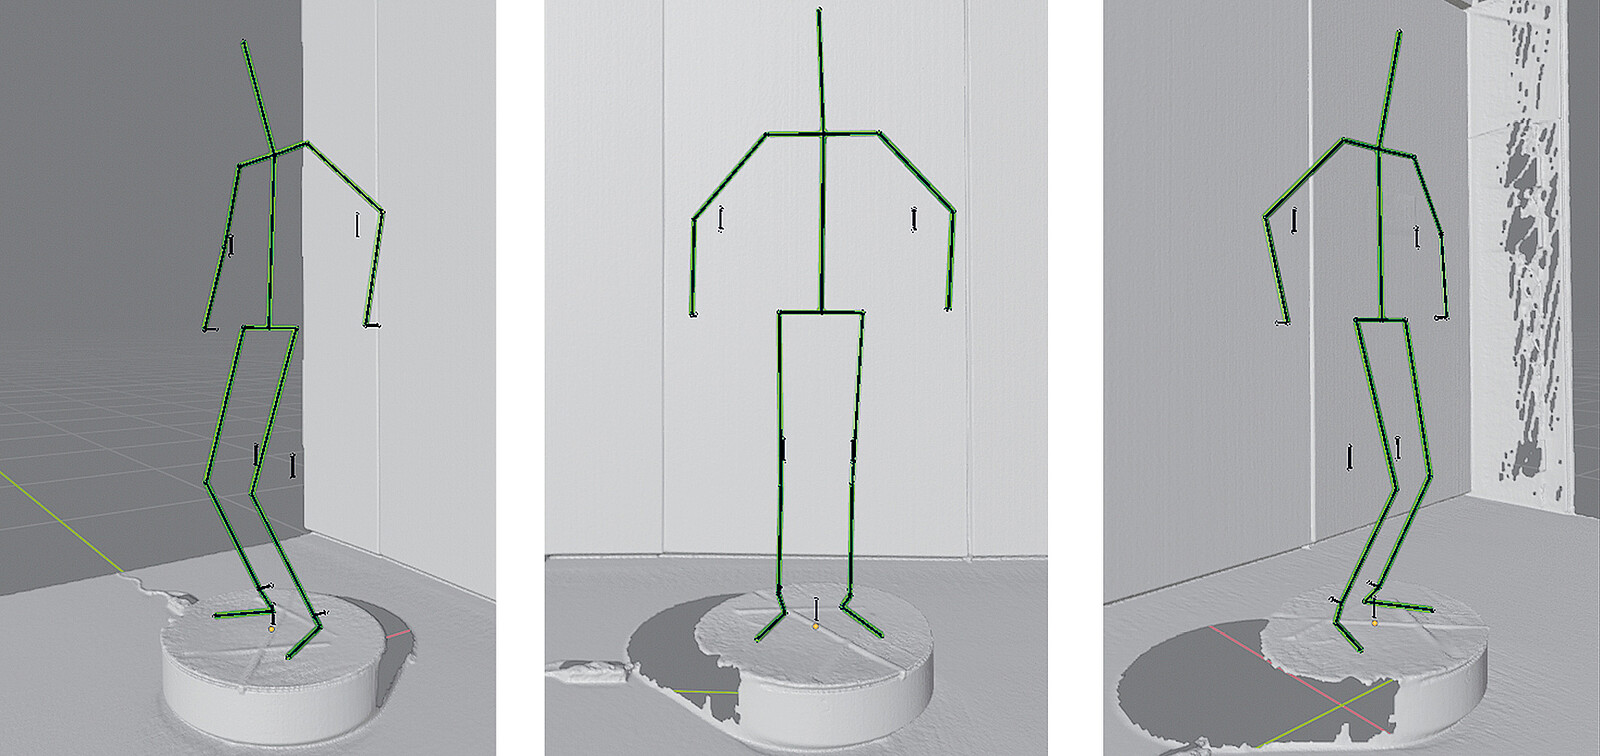 Drei weitere Aufnahmen des digitalen Skeletts, diesmal im virtuellen Raum auf einem Drehteller und in verschiedenen Posen und aus verschiedenen Perspektiven.